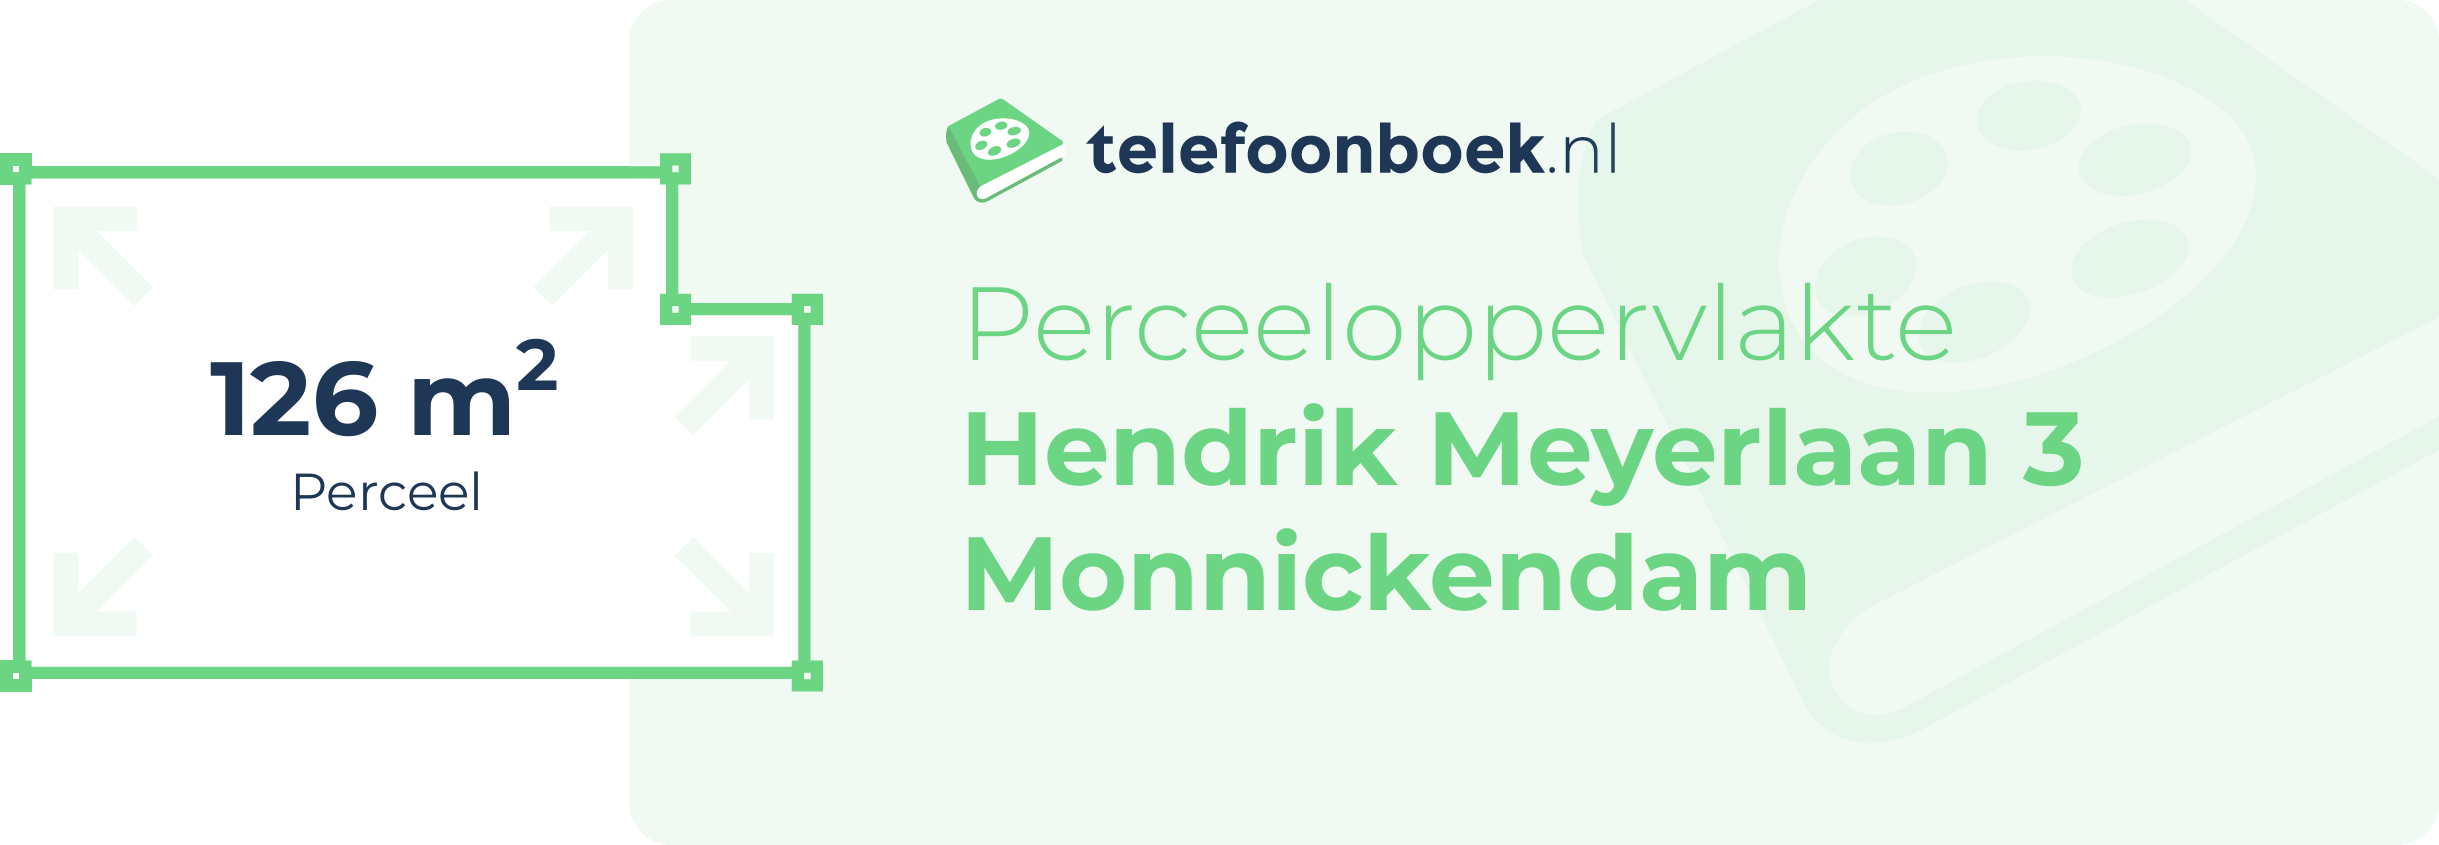 Perceeloppervlakte Hendrik Meyerlaan 3 Monnickendam